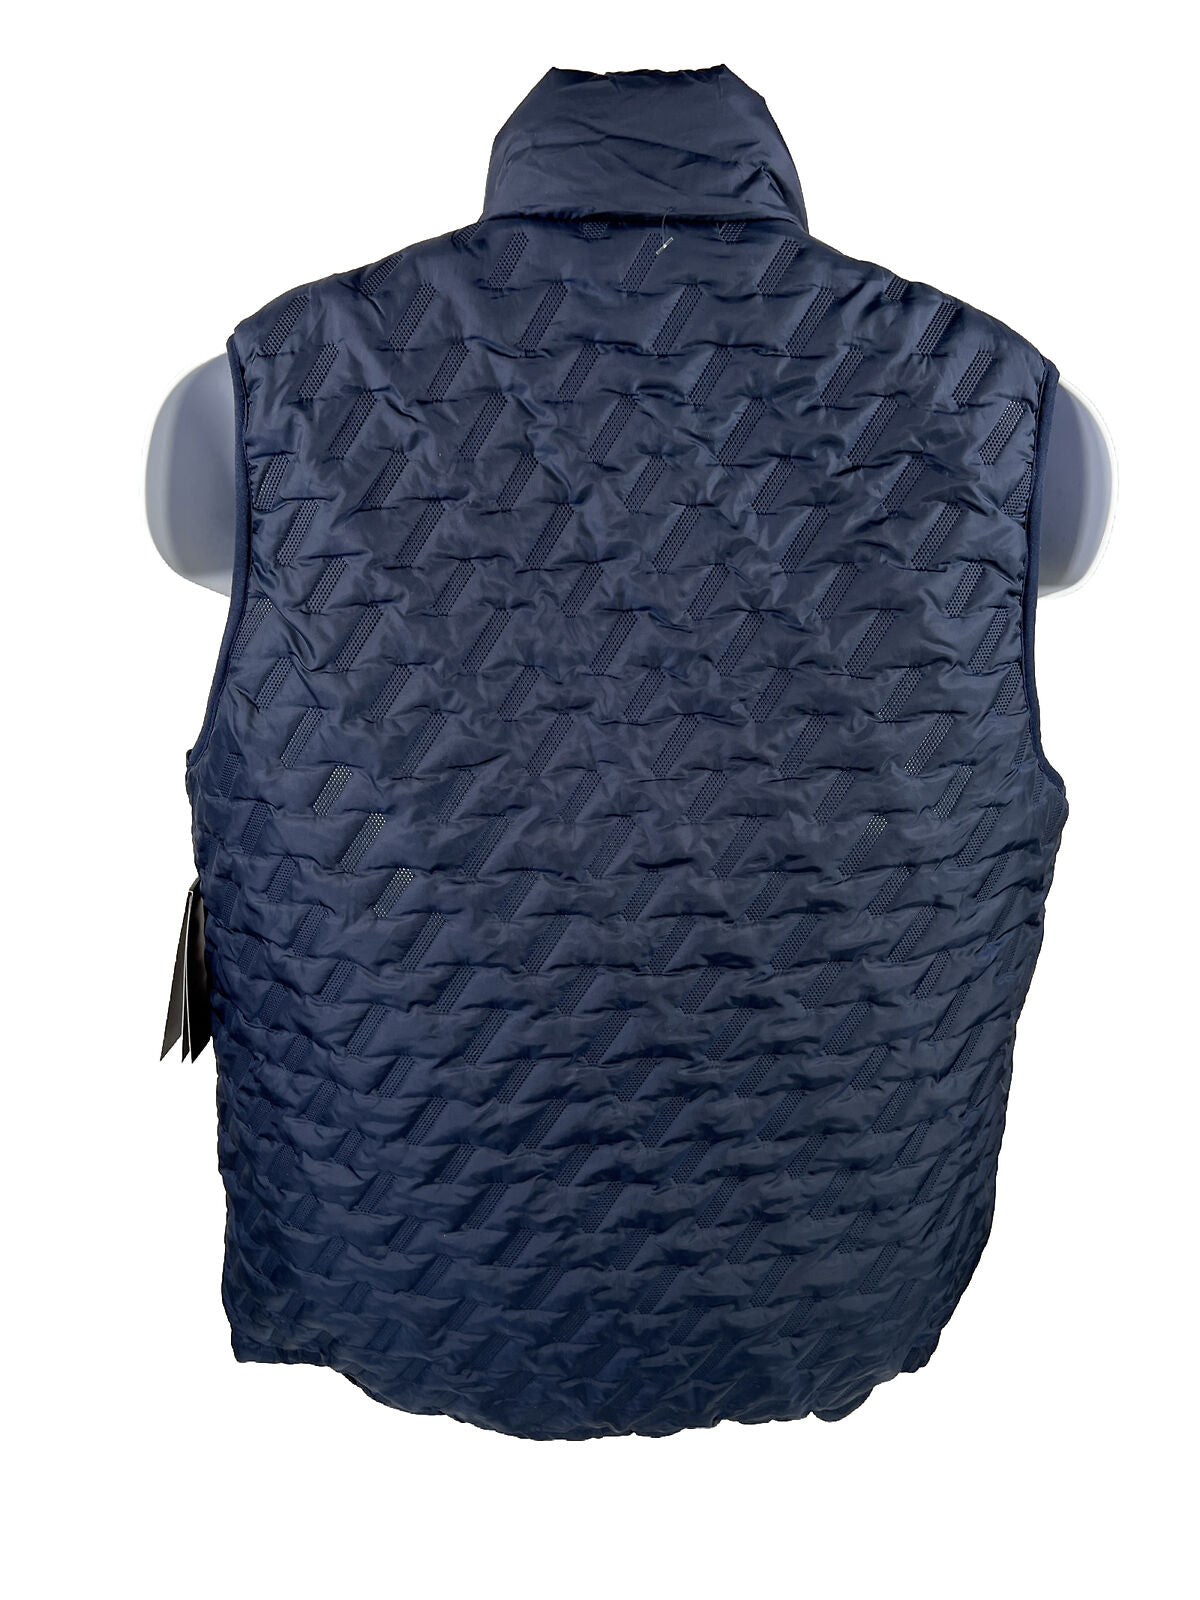 NEW New Balance Men's Navy Blue Tech Vest Full Zip - S